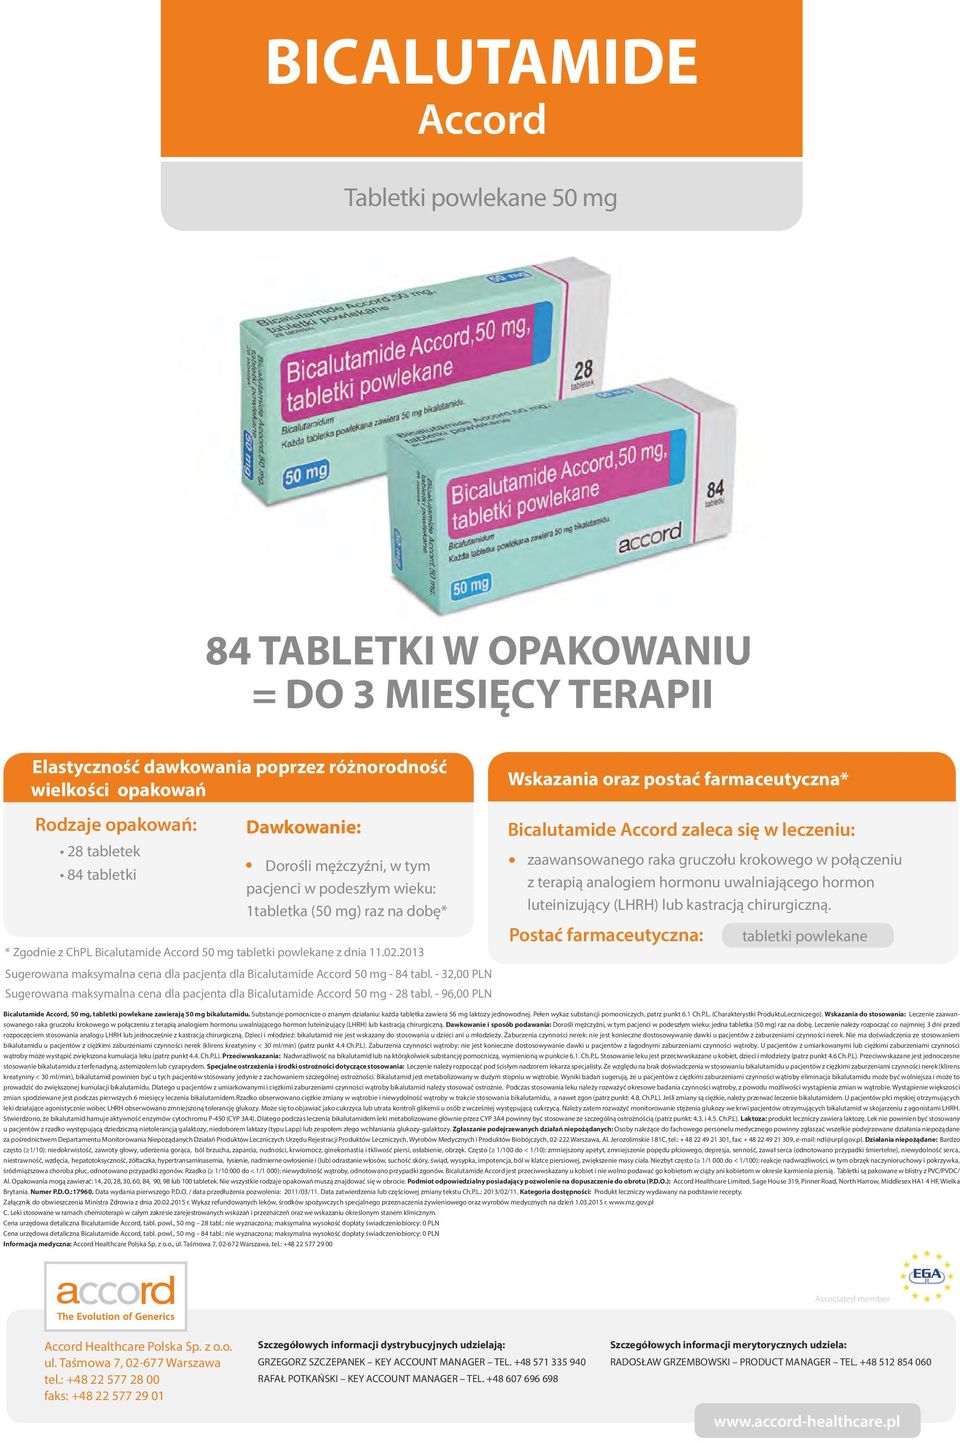 203 Sugerowana maksymalna cena dla pacjenta dla Bicalutamide Accord 50 mg - 84 tabl. - 32,00 PLN Sugerowana maksymalna cena dla pacjenta dla Bicalutamide Accord 50 mg - 28 tabl.